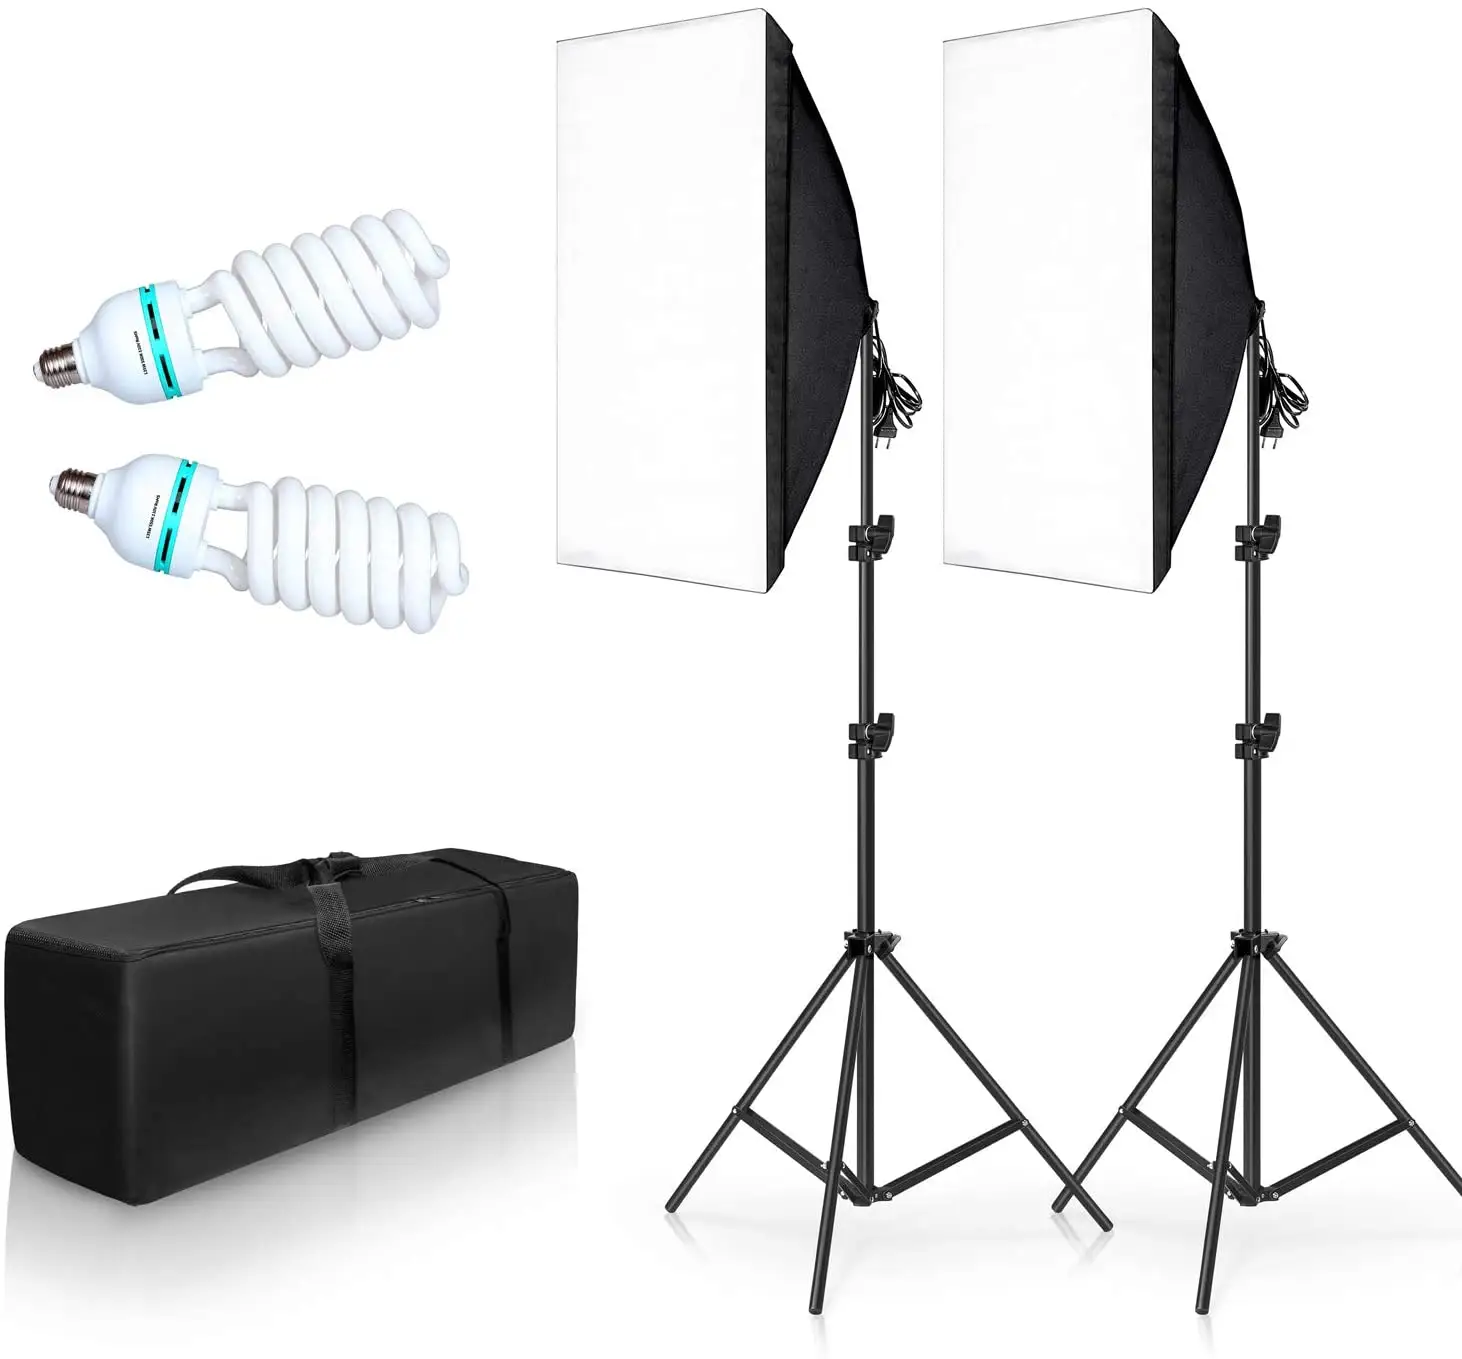 2 комплекта 20X28 софтбокс комплект освещения для фотосъемки 135 Вт система непрерывного освещения оборудование для фотостудии фотомодель для портретов